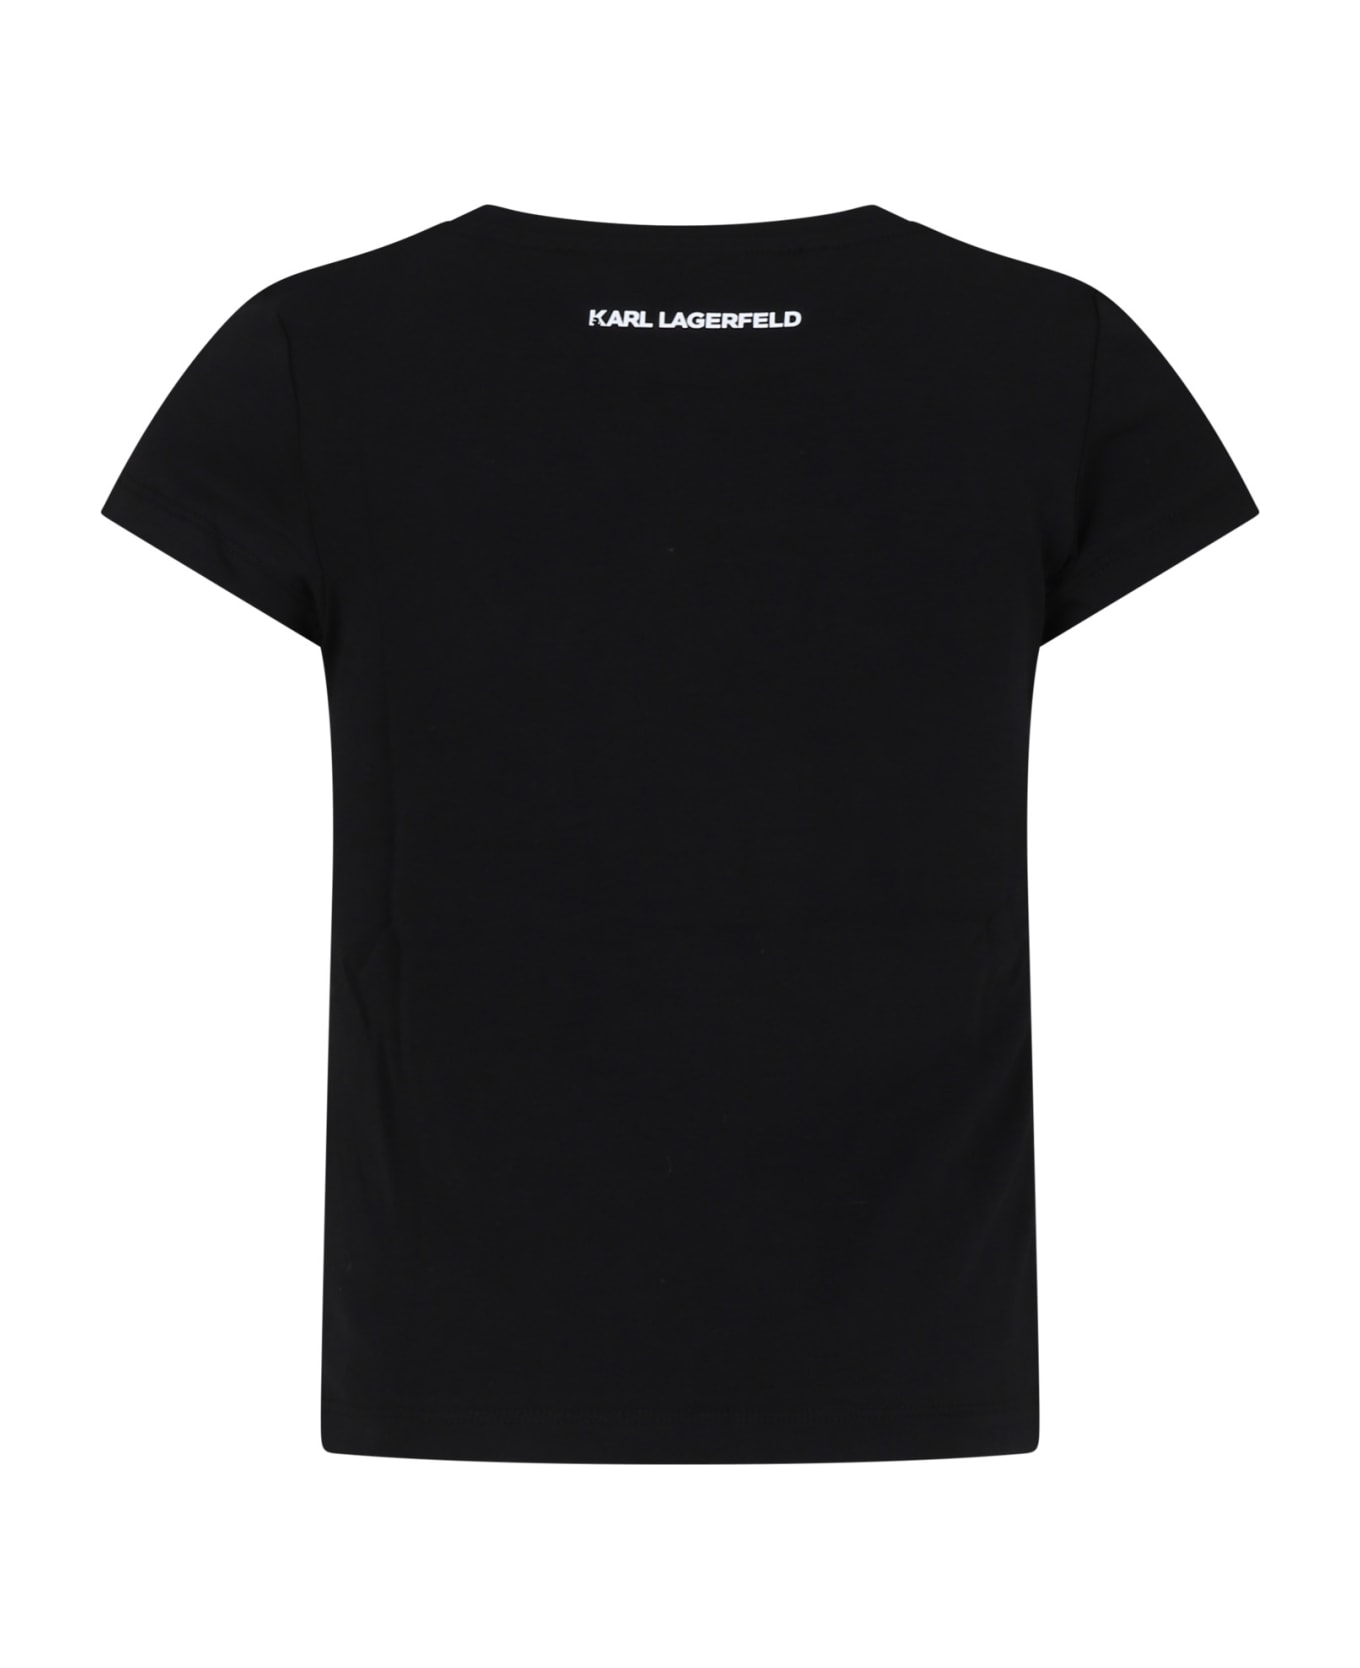 Karl Lagerfeld Kids Black T-shirt For Girl With Logo - Black